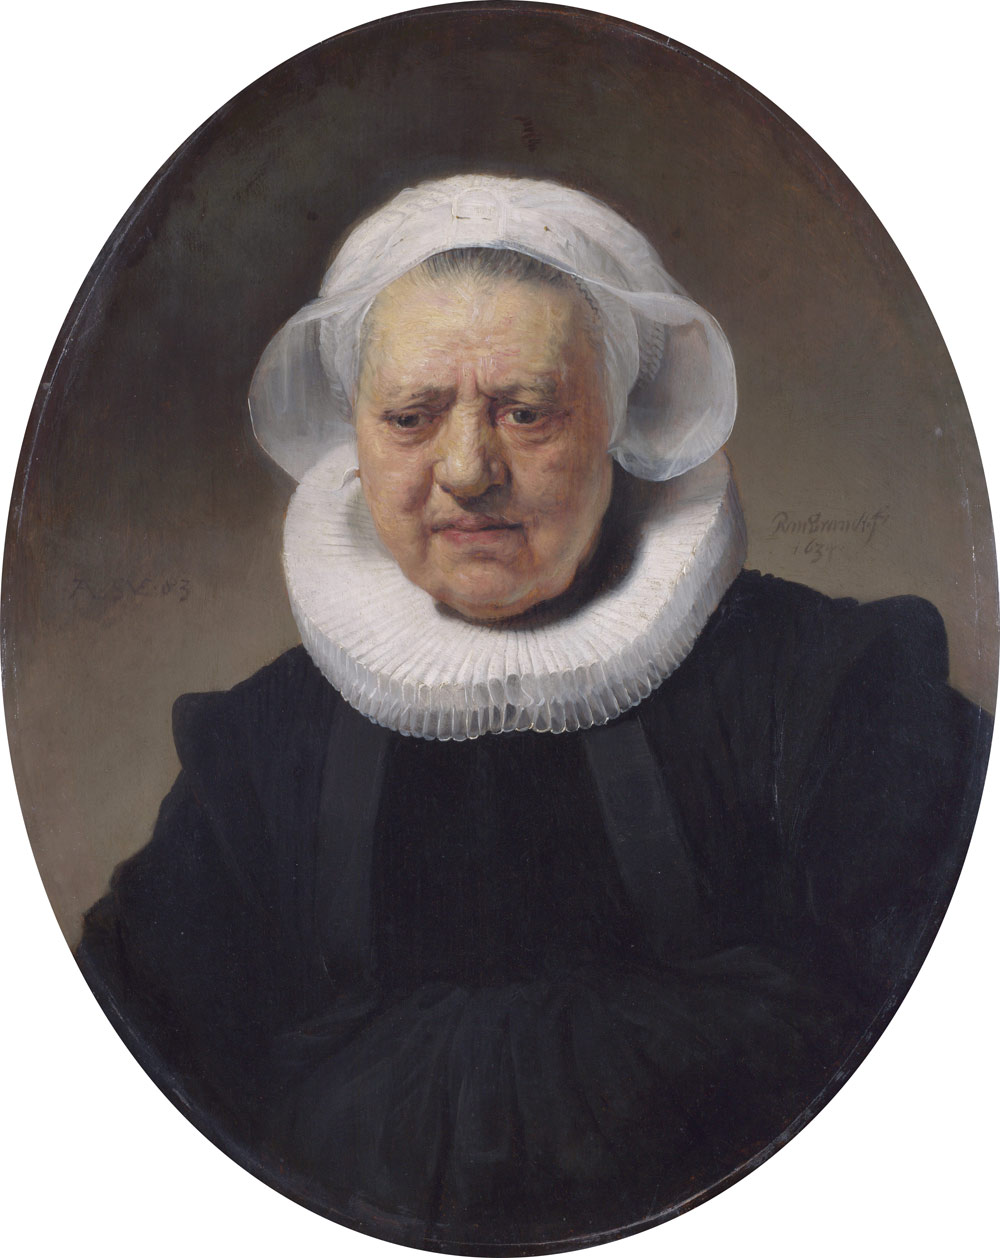 Rembrandt, Ritratto di una donna di ottantatrÃ© anni (1634; olio su tavola, 71,1 x 55,9 cm; Londra, National Gallery)
